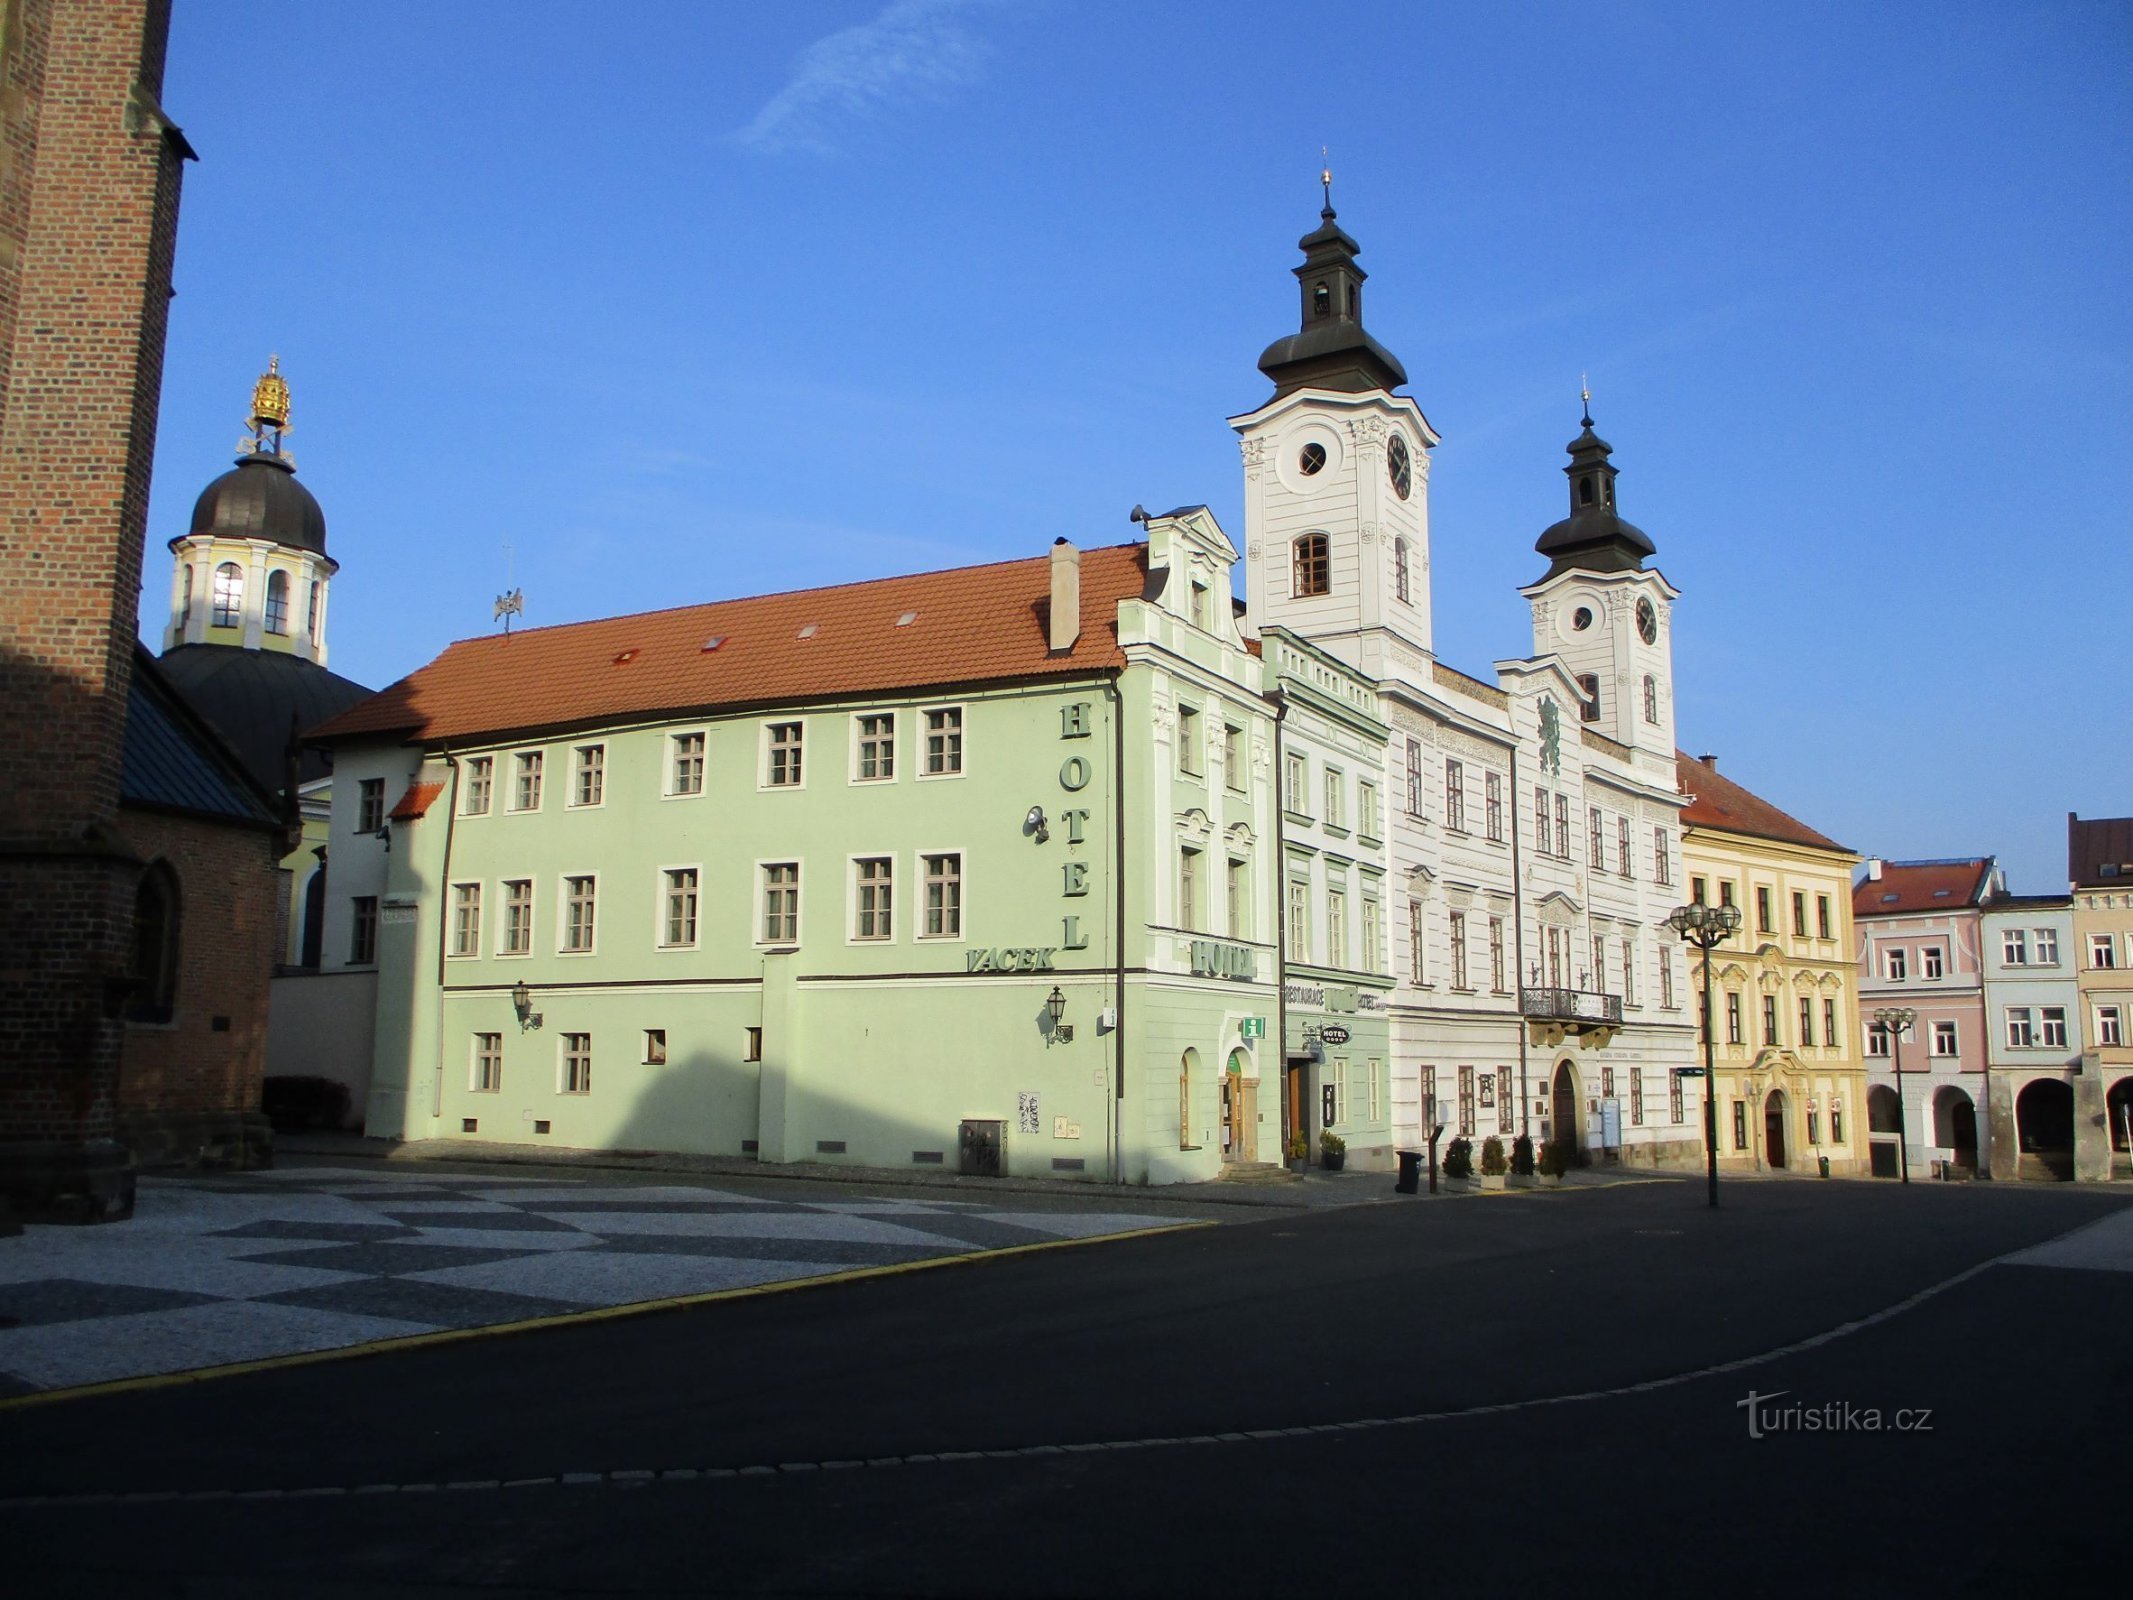 Velké náměstí iz br. 166 (Hradec Králové, 9.2.2020. veljače XNUMX.)